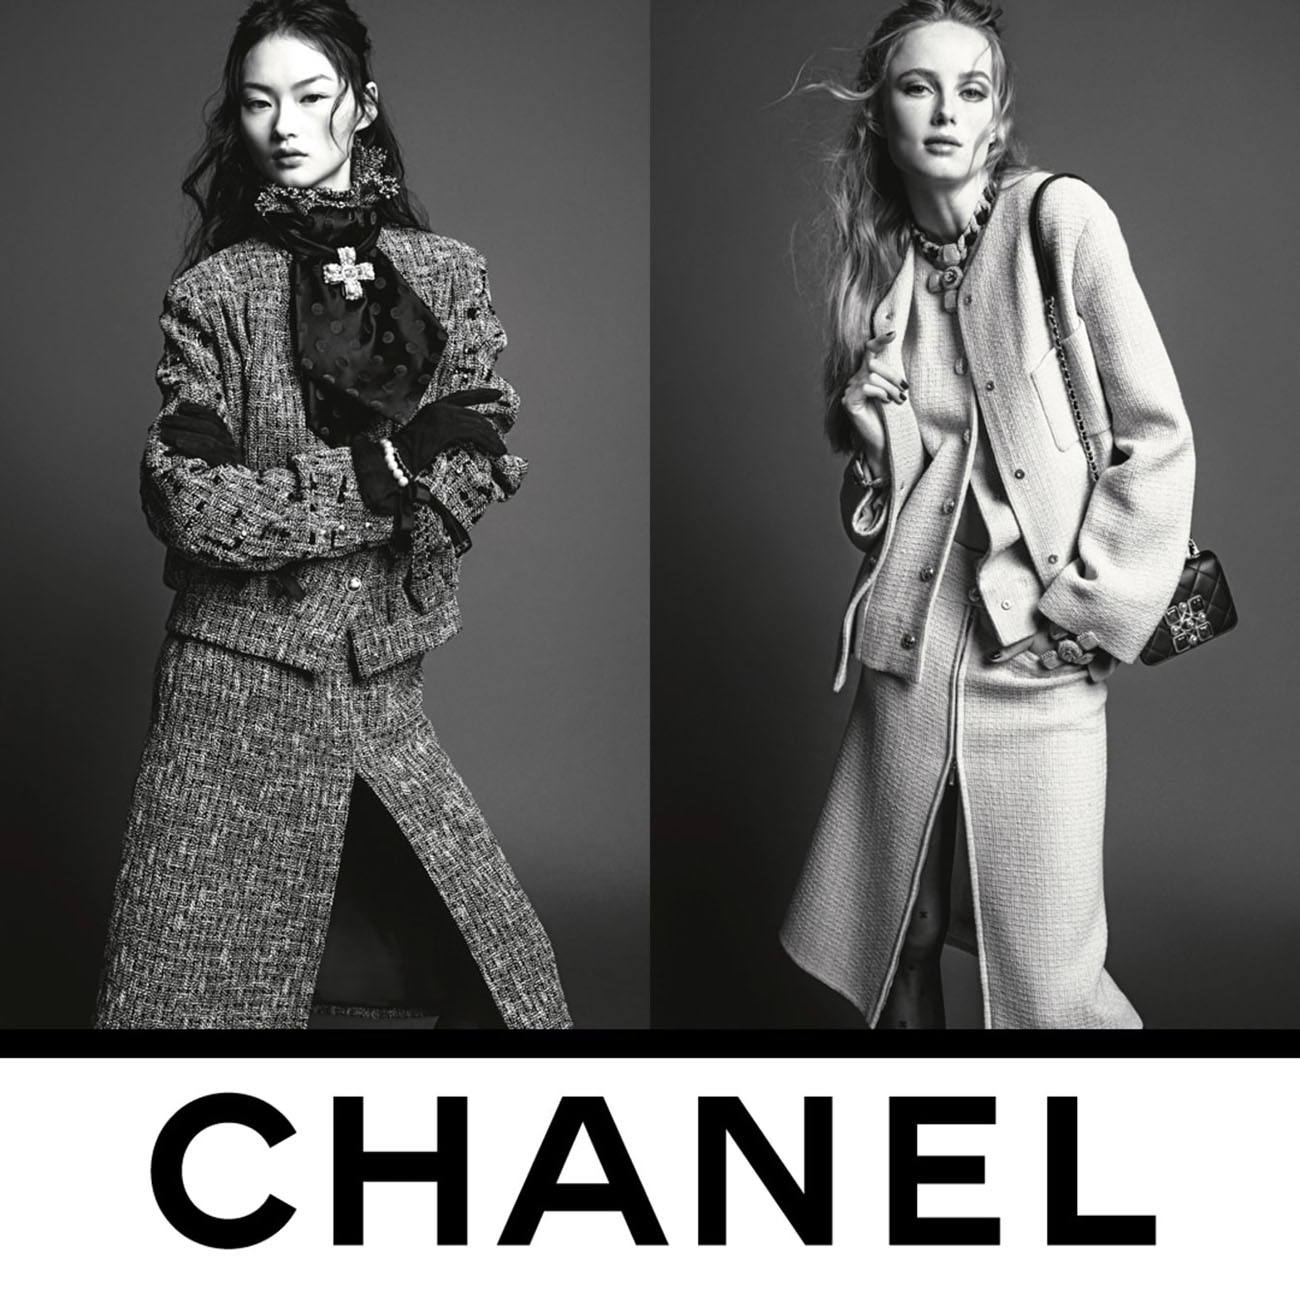 Chanel Fall-Winter 2020 Campaign